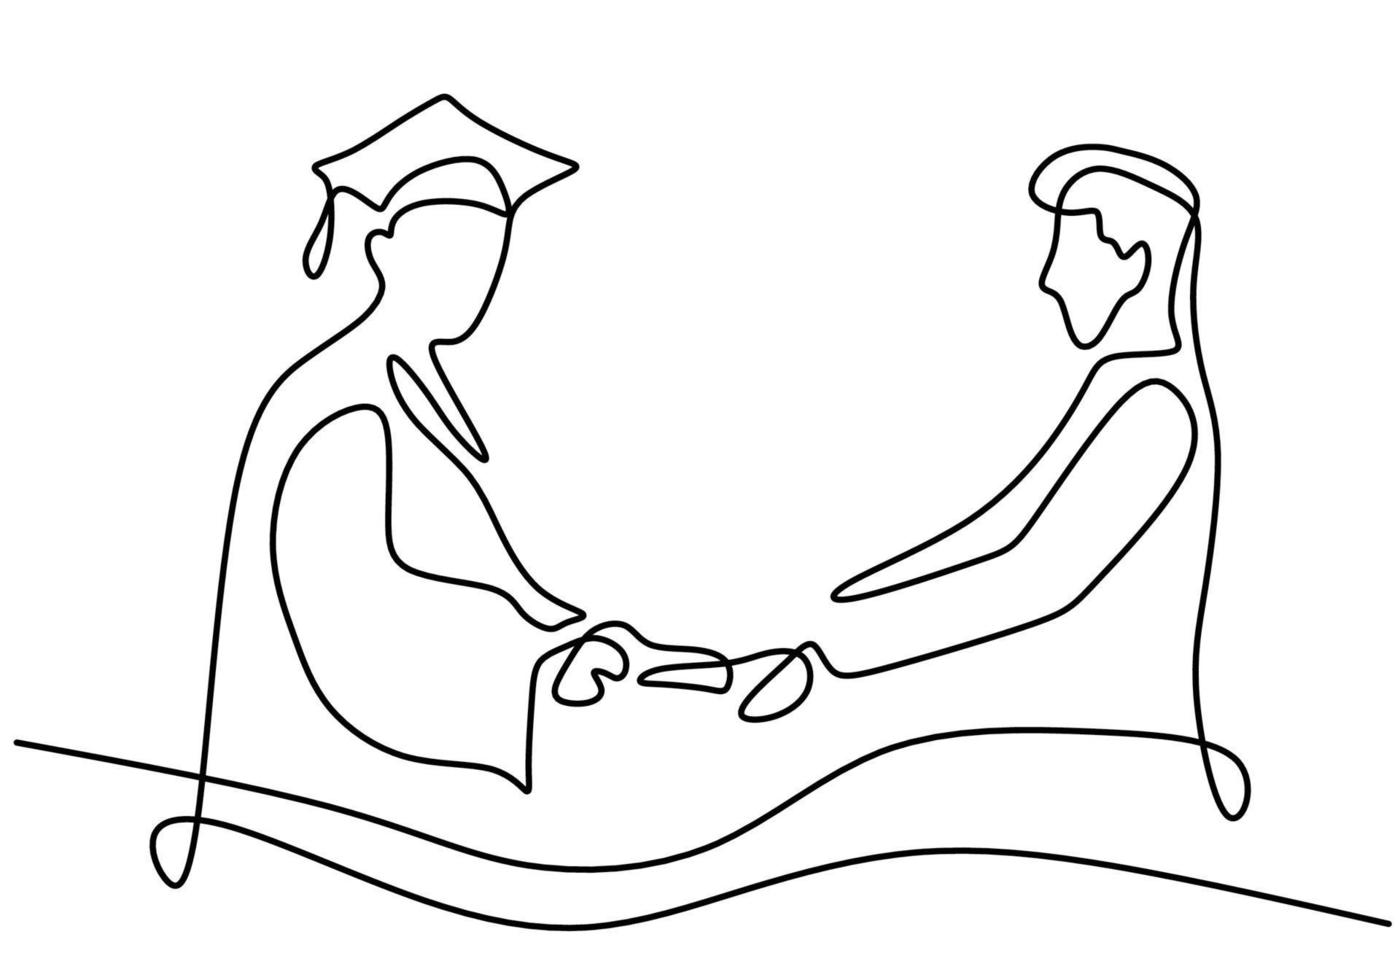 un seul dessin au trait d'un étudiant diplômé avec conférencier isolé sur fond blanc. un conférencier donne des diplômes aux étudiants et leur serre la main. concept de graduation de l'éducation. illustration vectorielle vecteur